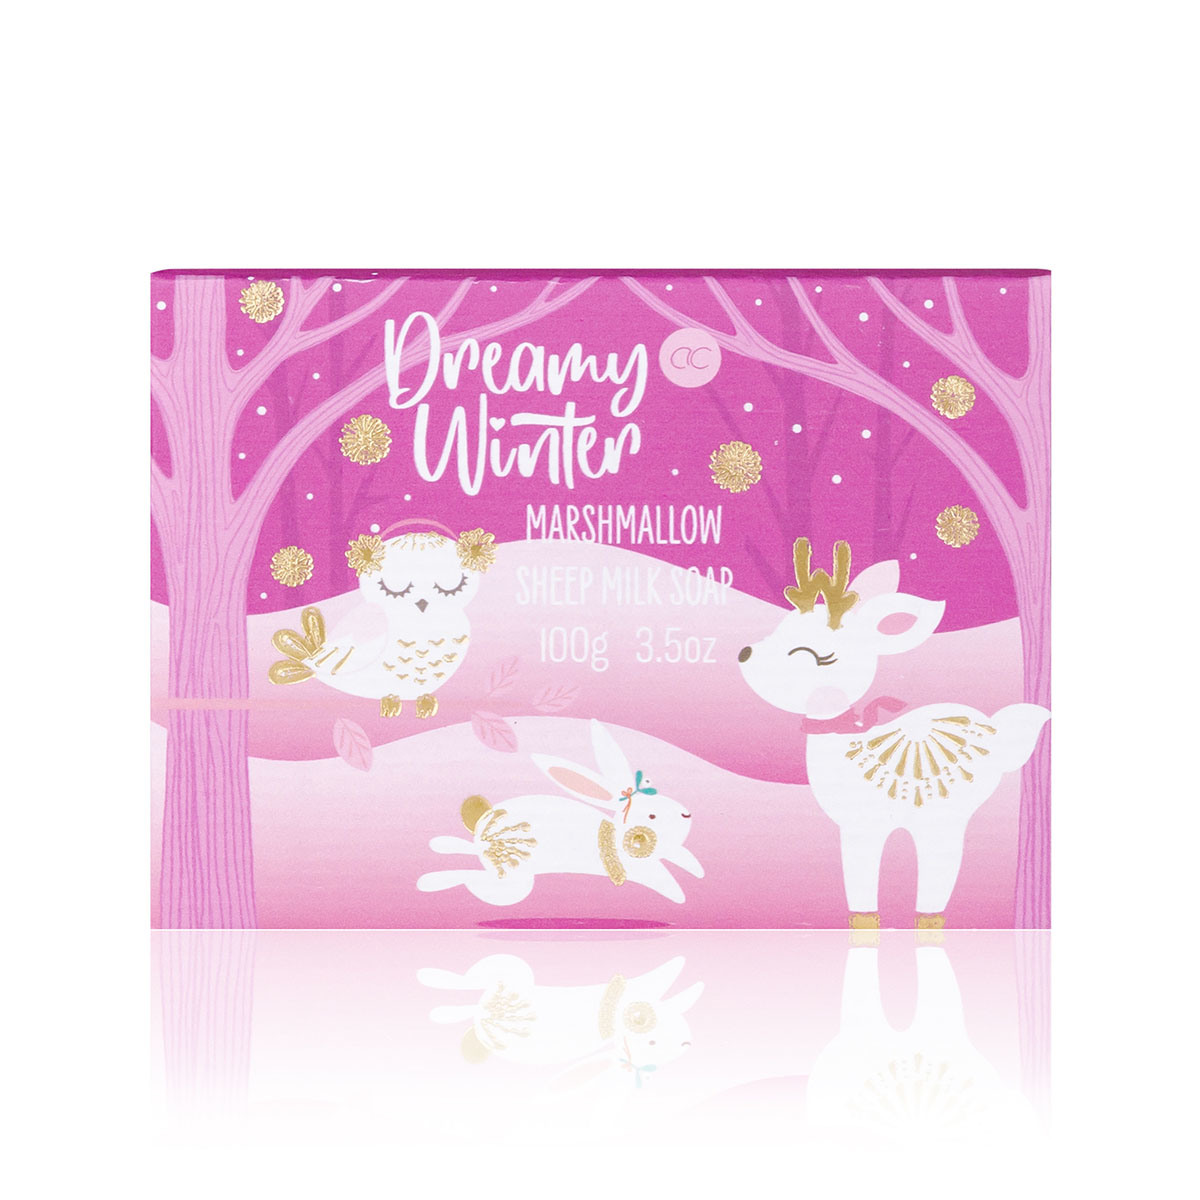 ACCENTRA Sheep soap milk 5556896 Dreamy Winter